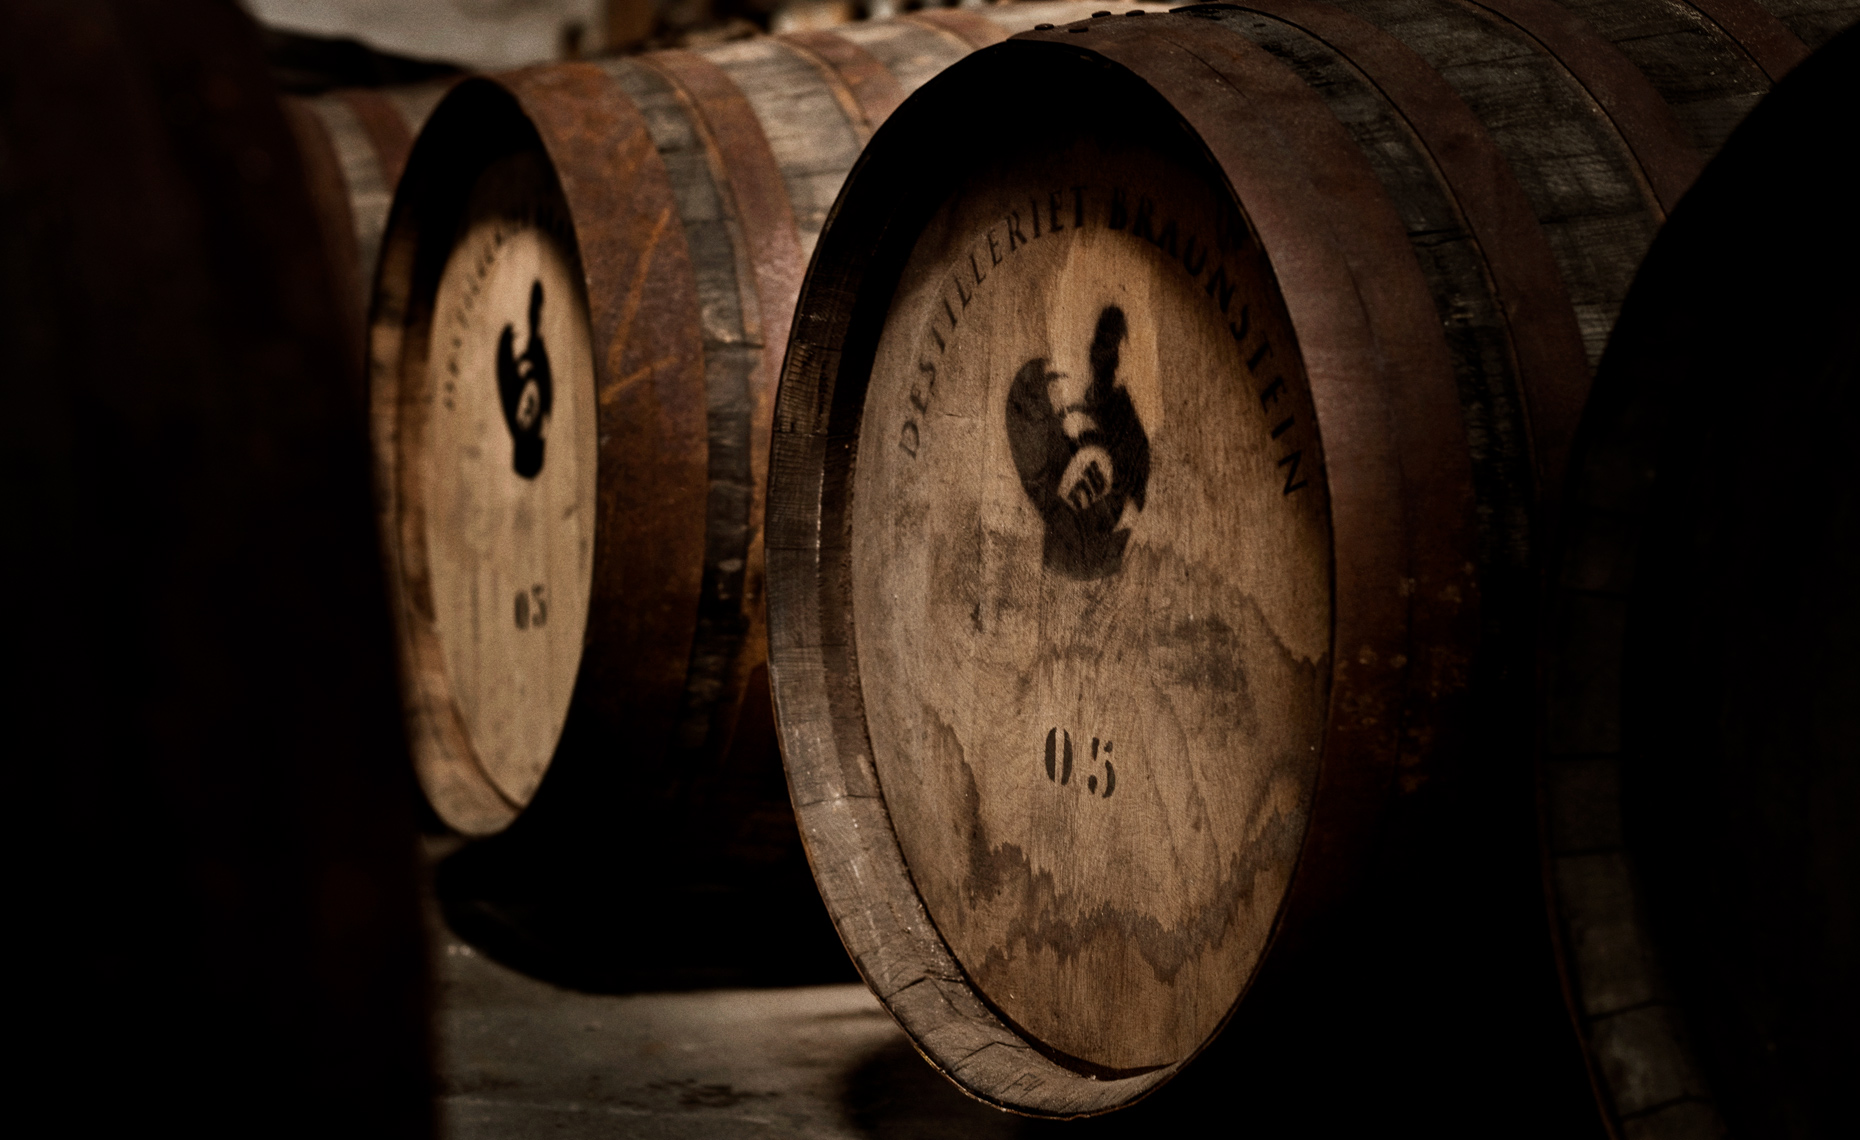 Aged whisky barrels 